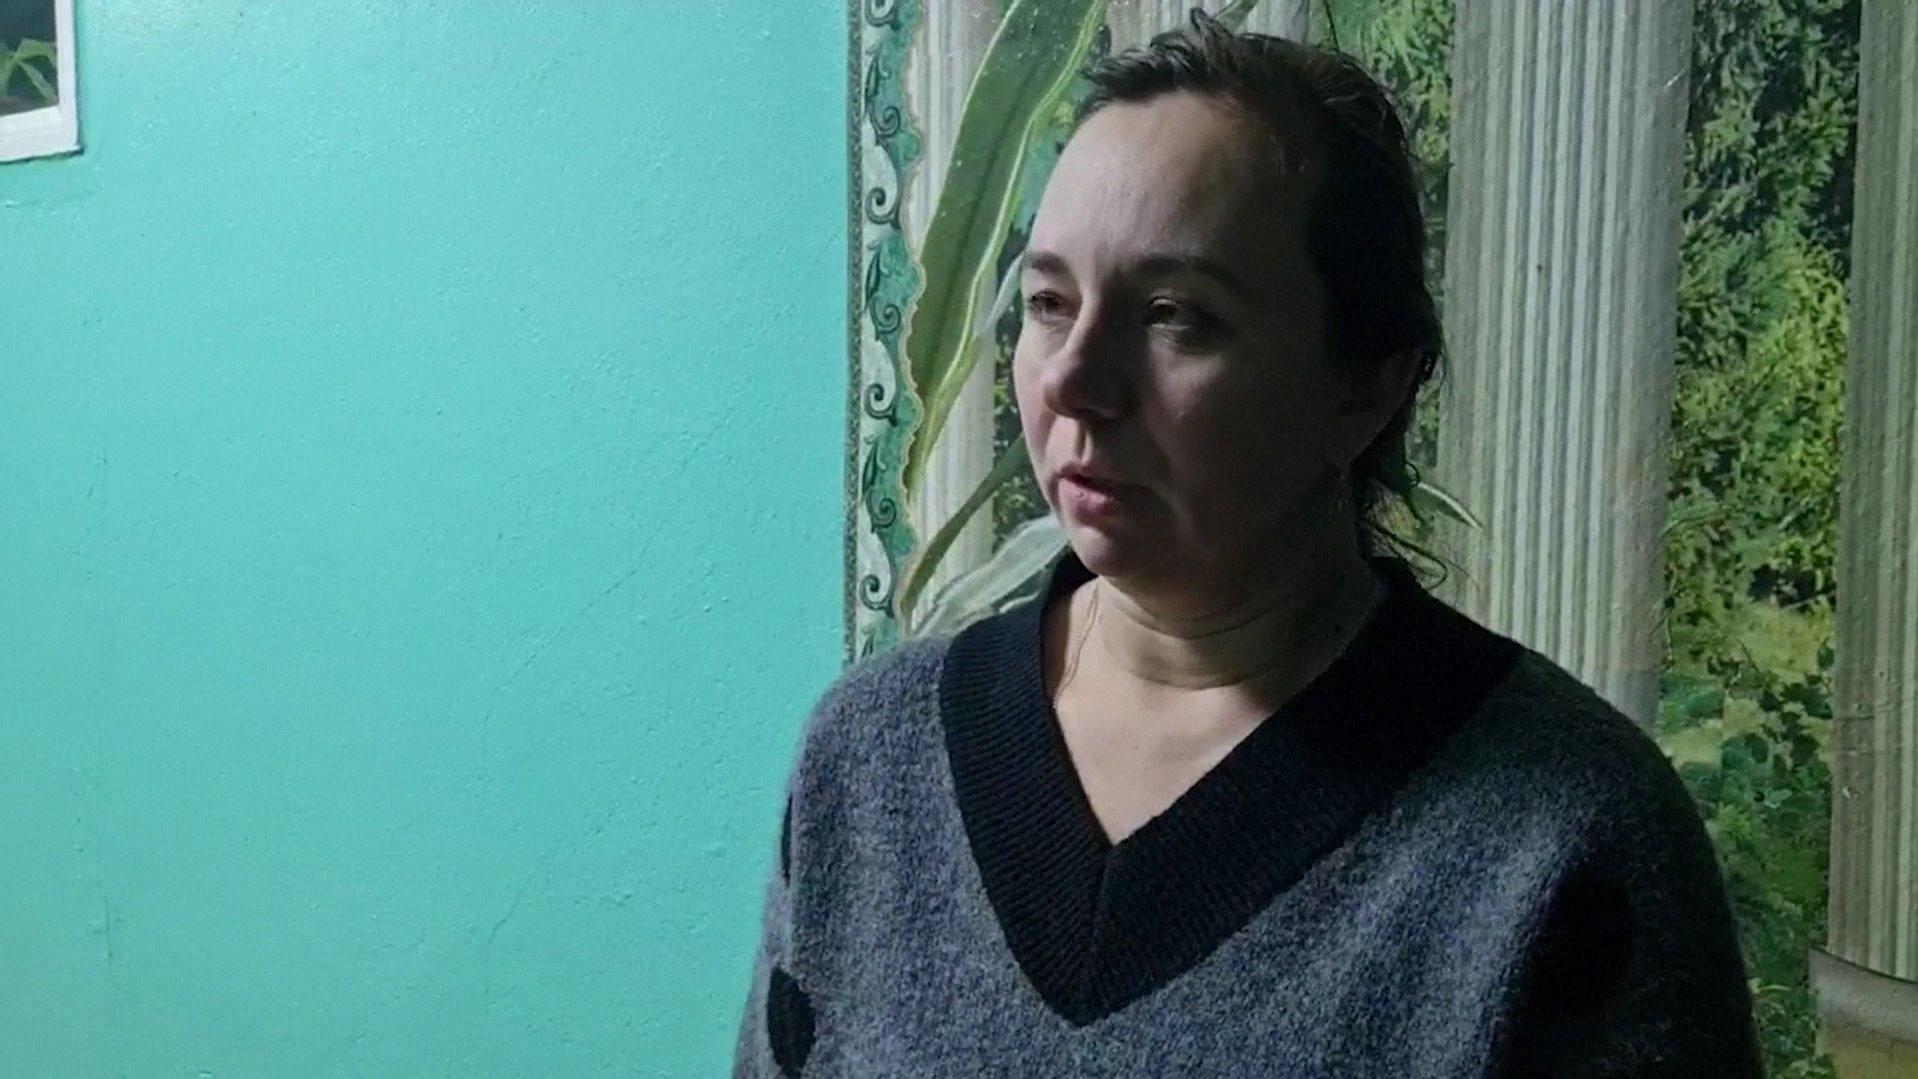 Diese Frau aus Mariupol hat den Kontakt zu ihrer Tochter verloren und ist in großer Sorge um ihr Kind.